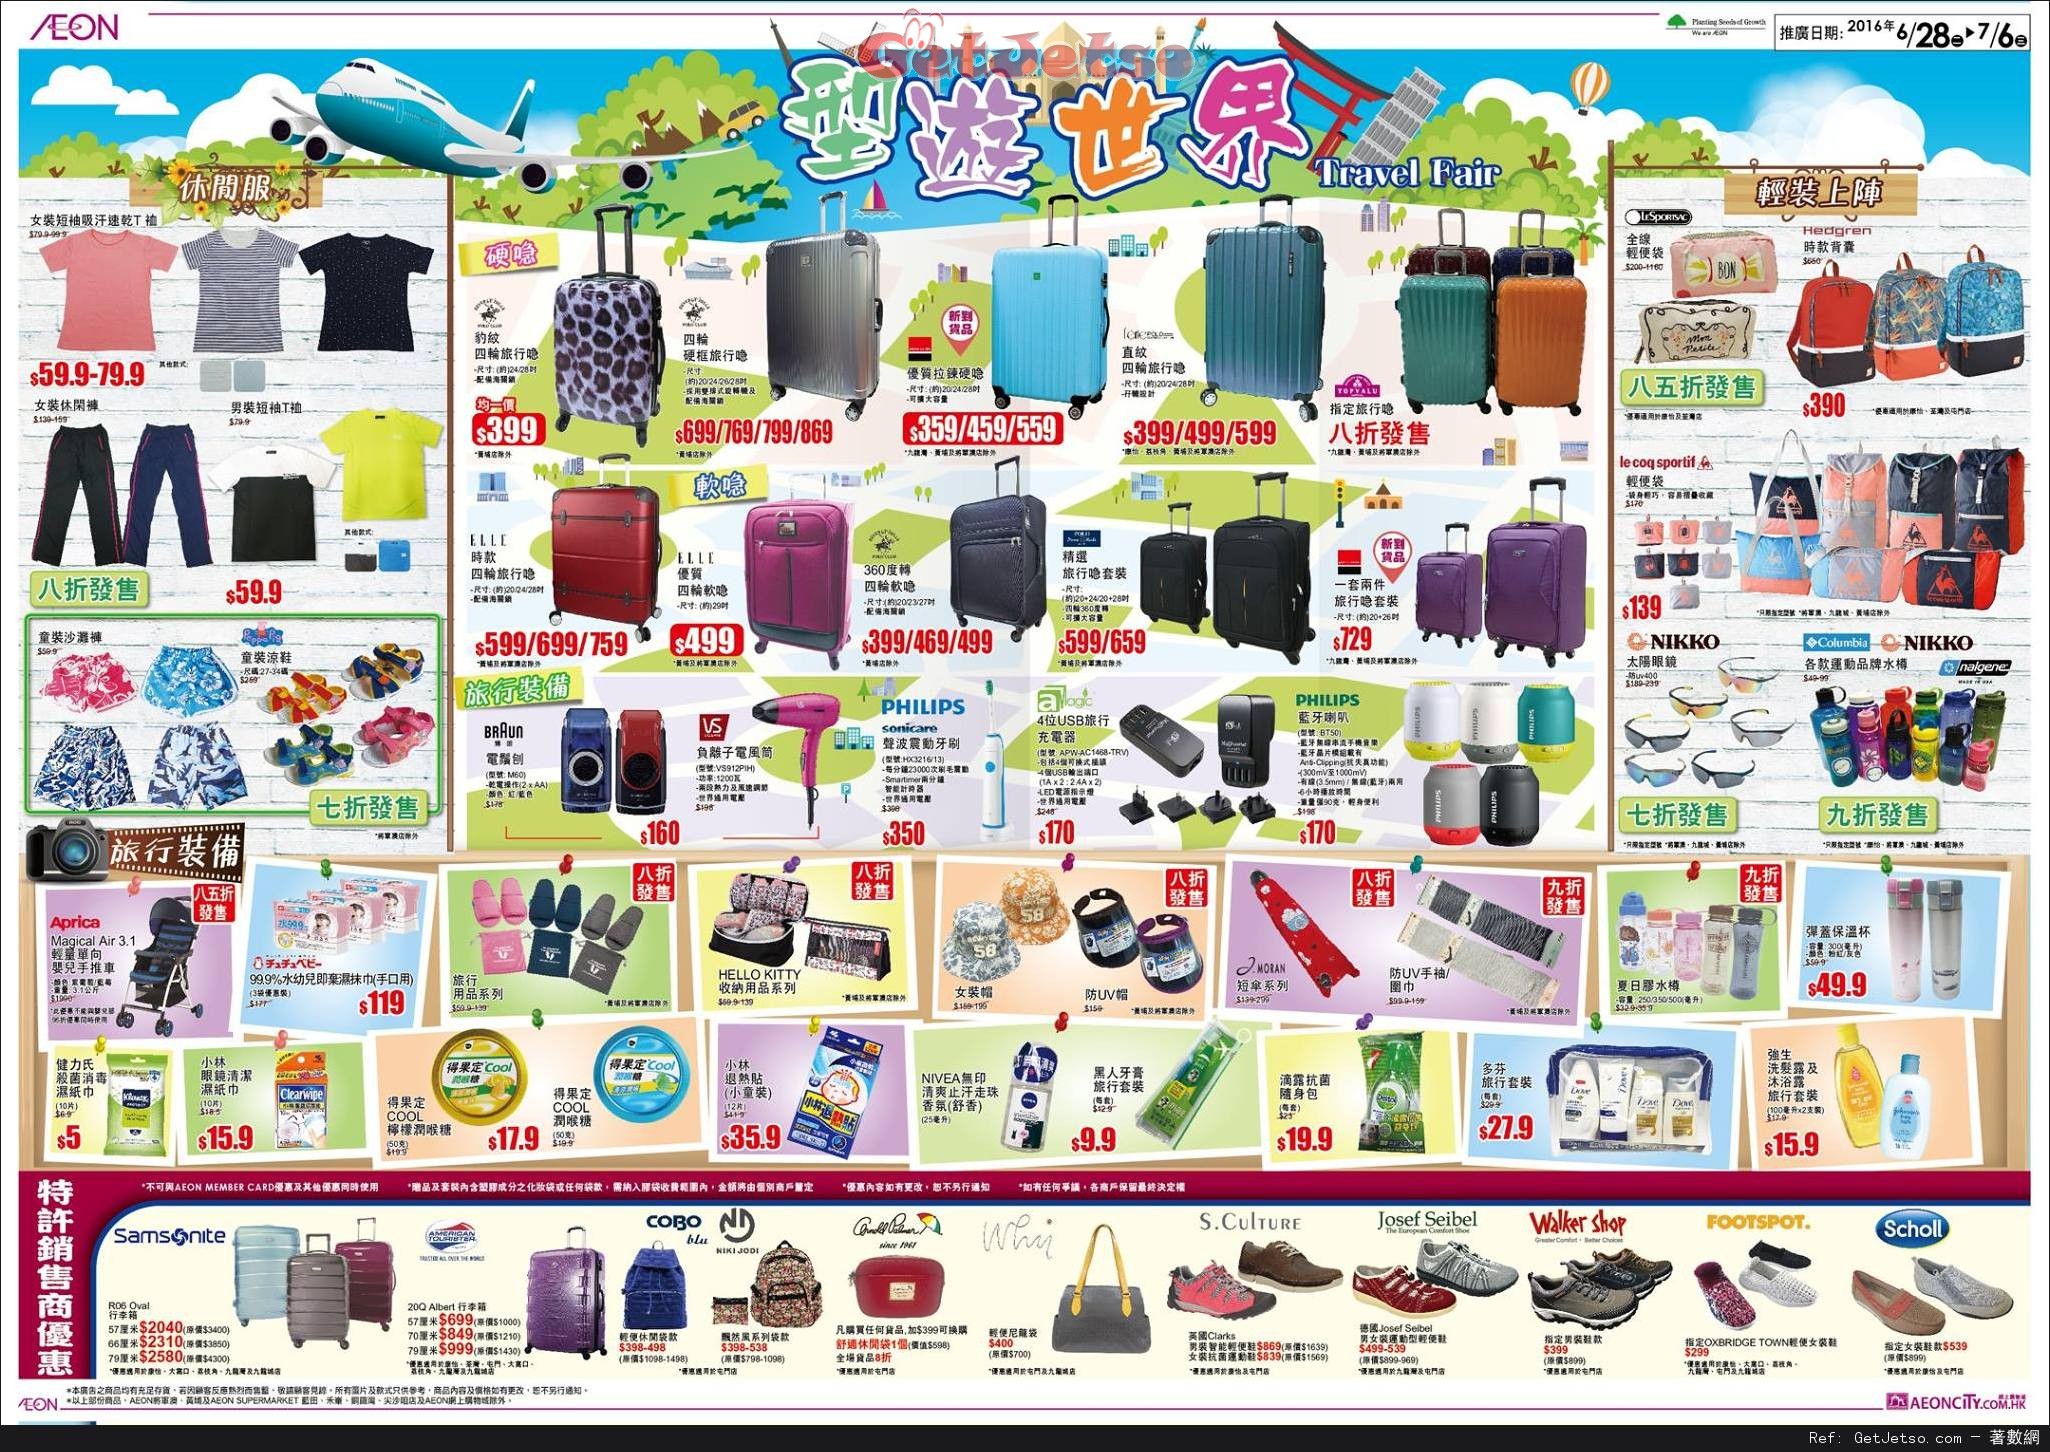 AEON 夏日涼浸浸電器展/型遊世界旅遊用品購買優惠(至16年7月6日)圖片3